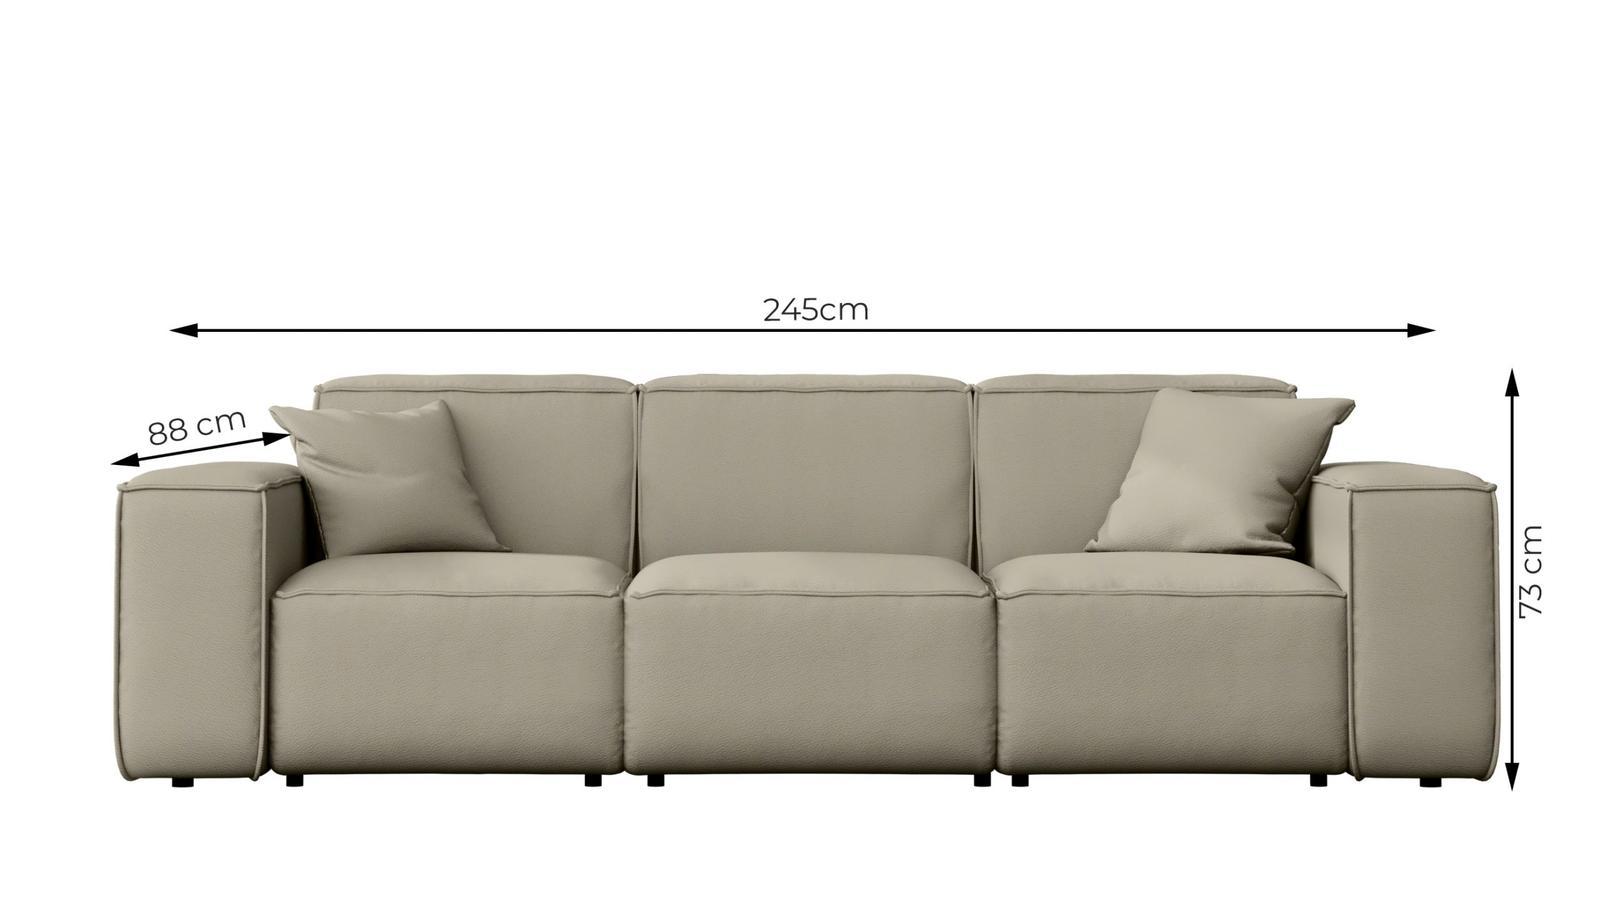 Sofa ogrodowa MALIBU 245x103x88 cm wodoodporna UV 3-os + 2 poduszki do ogrodu kremowa 2 Full Screen